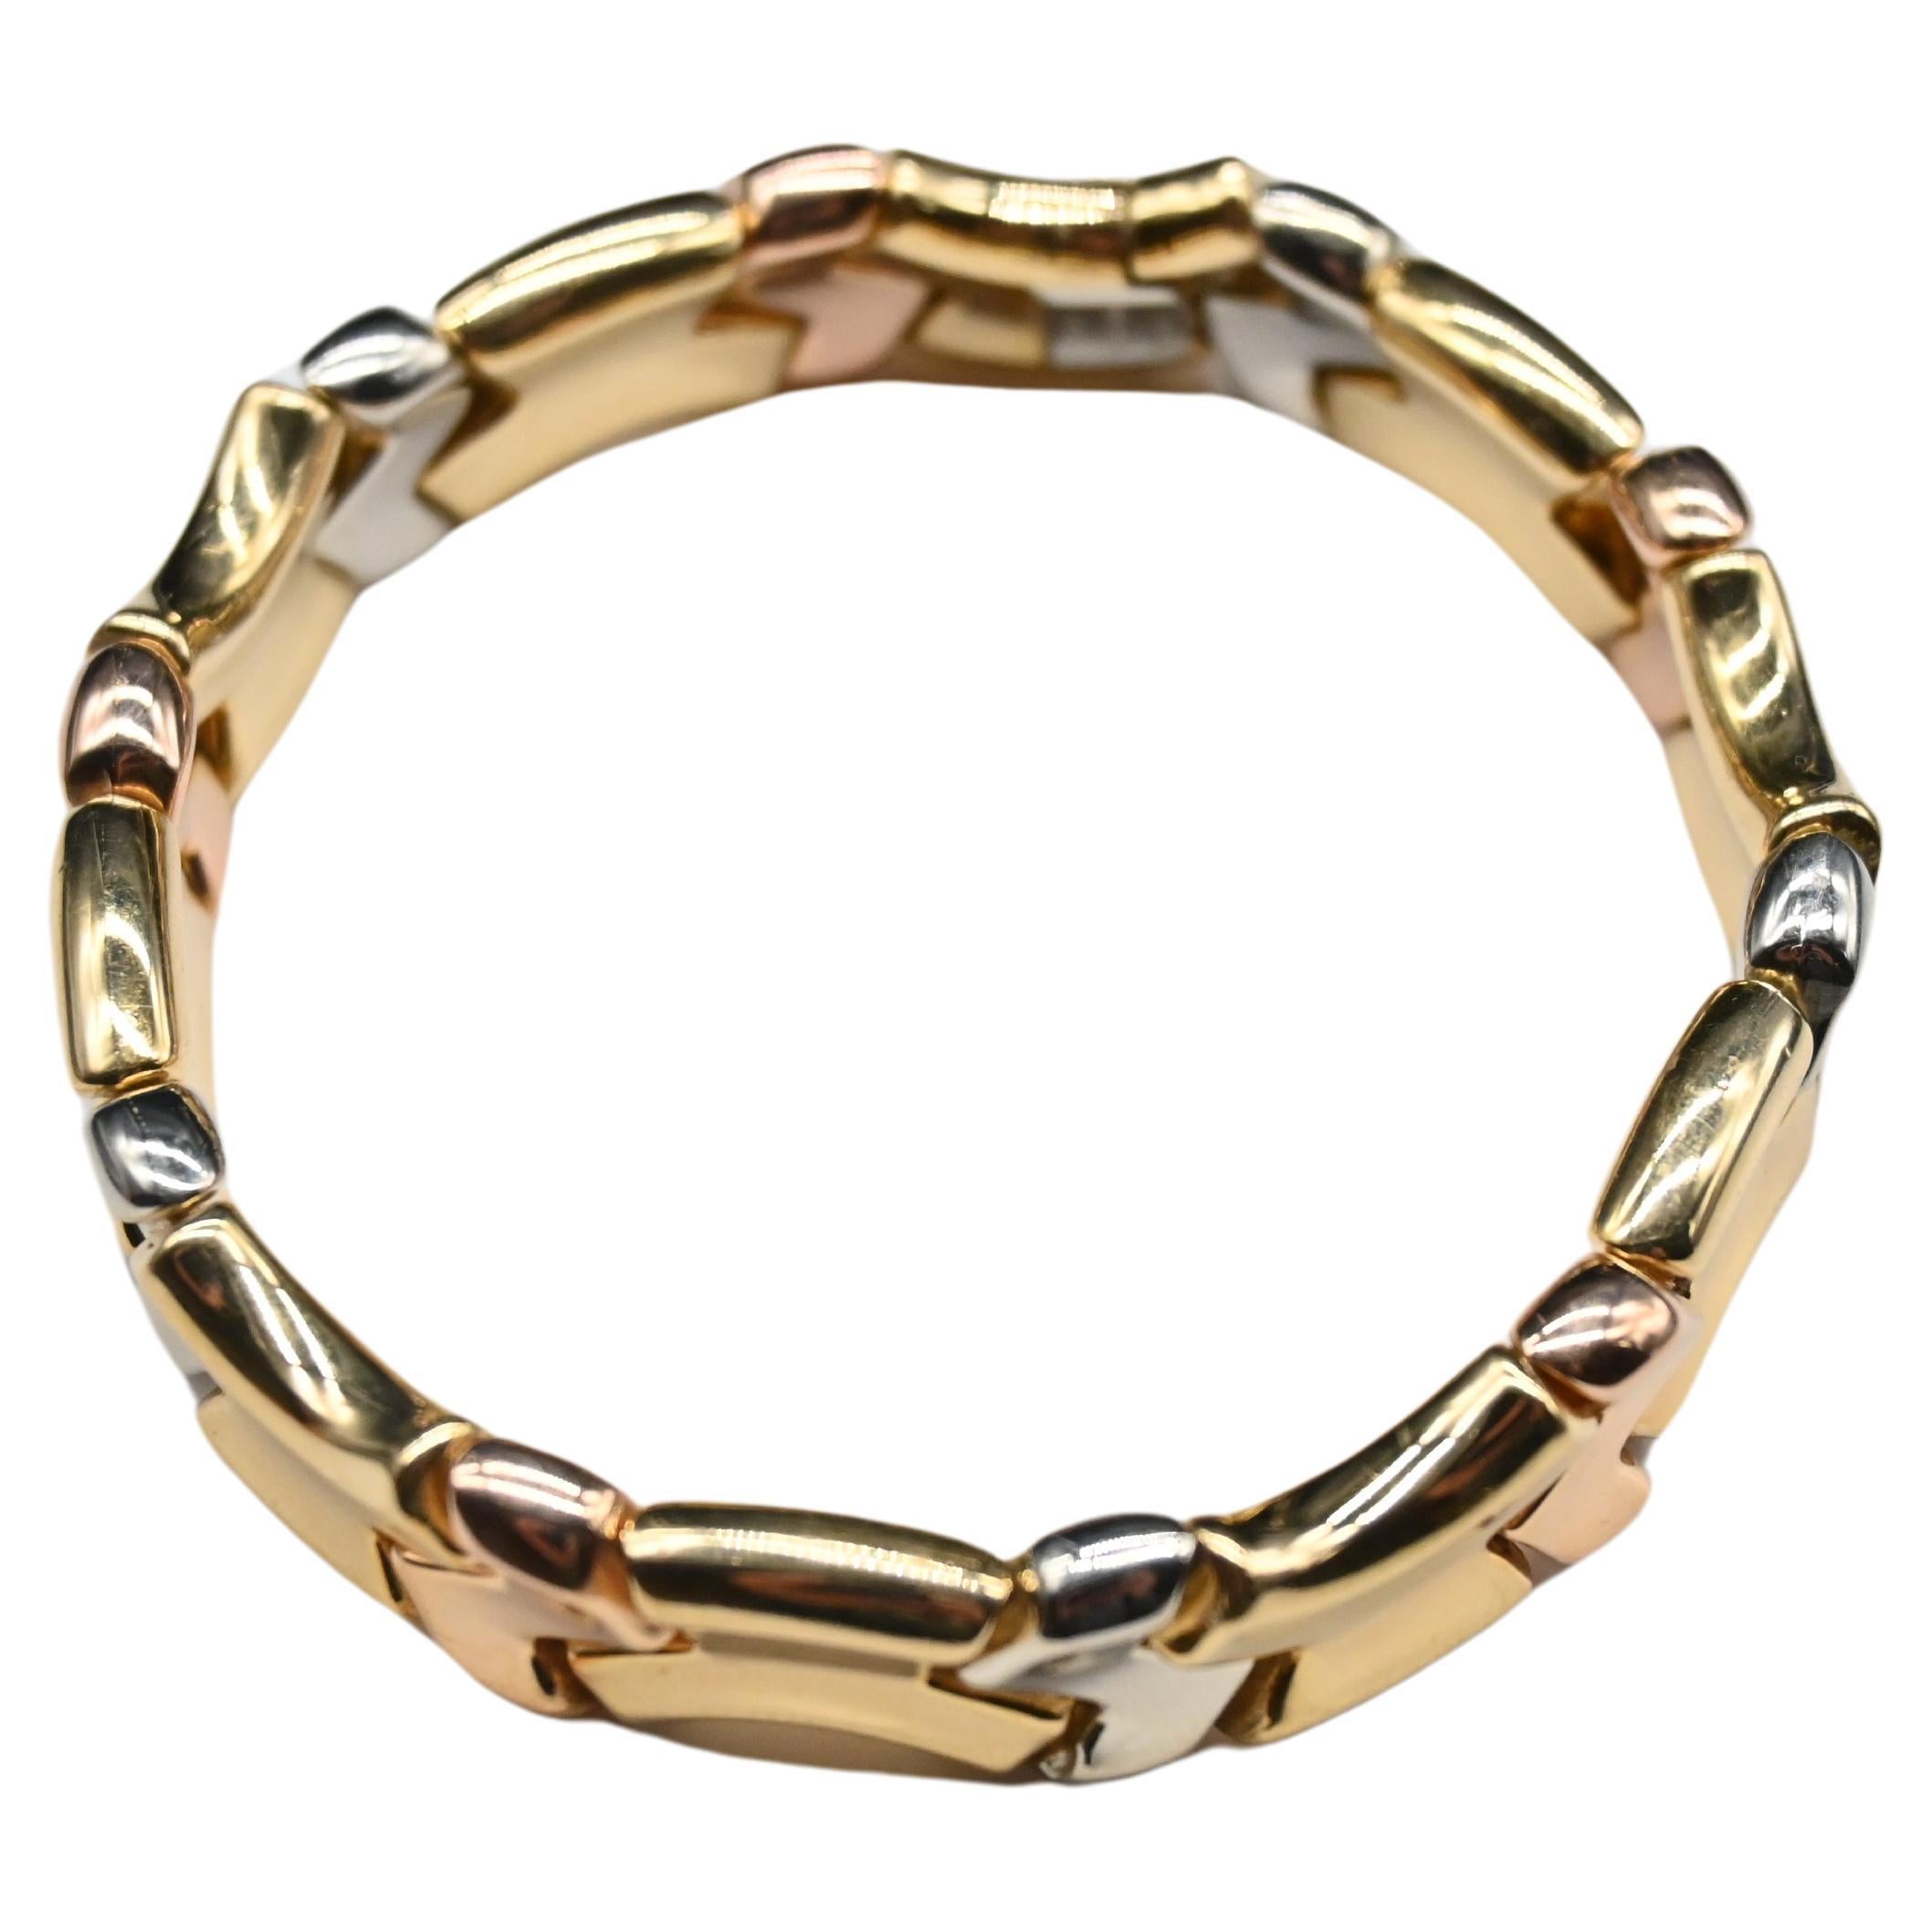 Entdecken Sie unser Tricolor-Armband in drei Goldtönen. Dieses mit Präzision gefertigte Armband verkörpert die Eleganz der 1980er Jahre und verleiht Ihrem Stil einen modernen Touch.

Dieses Armband ist aus einer harmonischen Mischung von 18 Karat